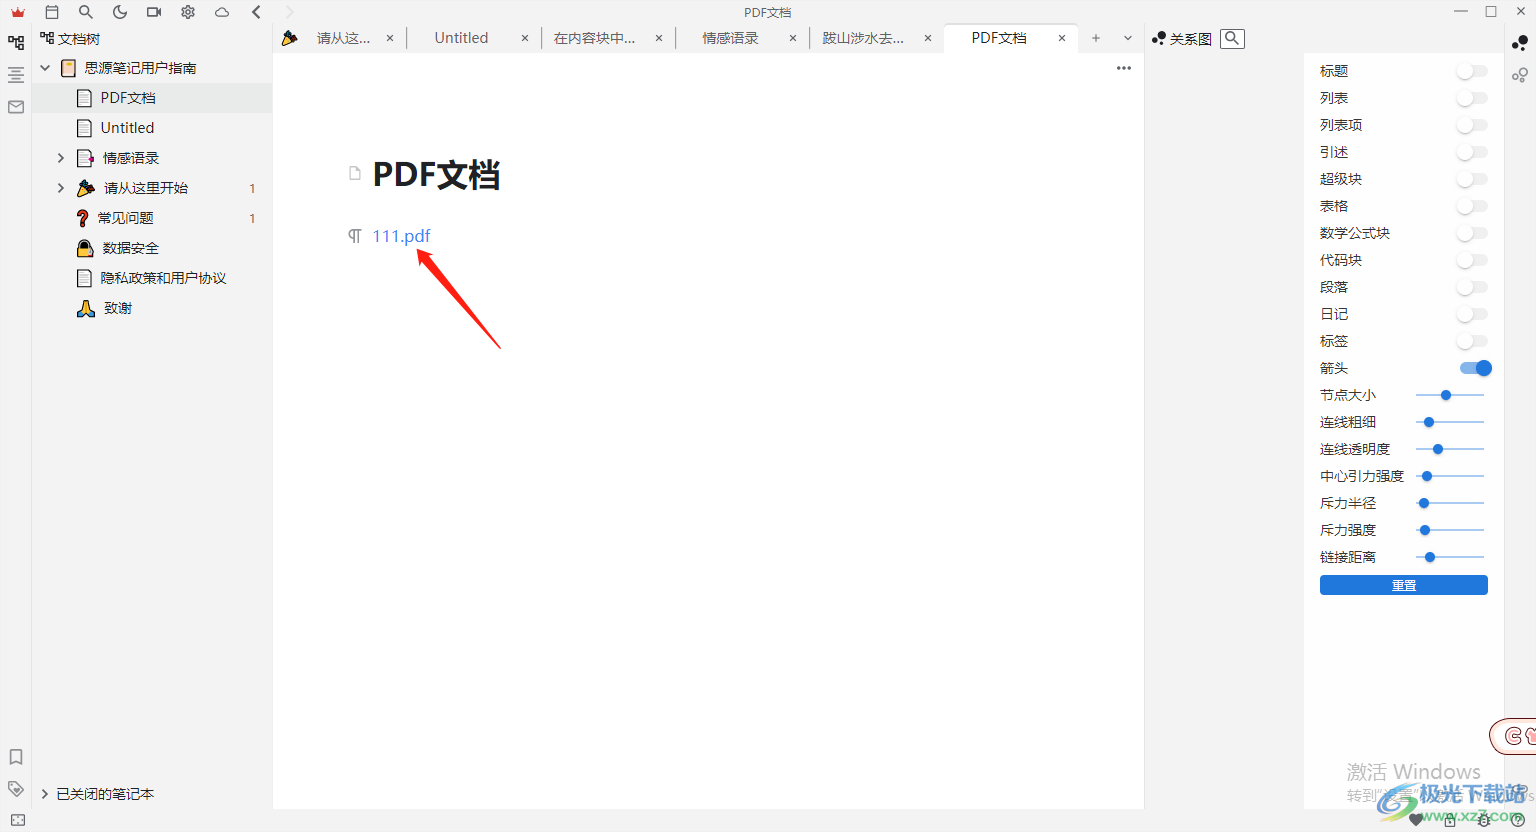 思源笔记导入pdf文件的方法